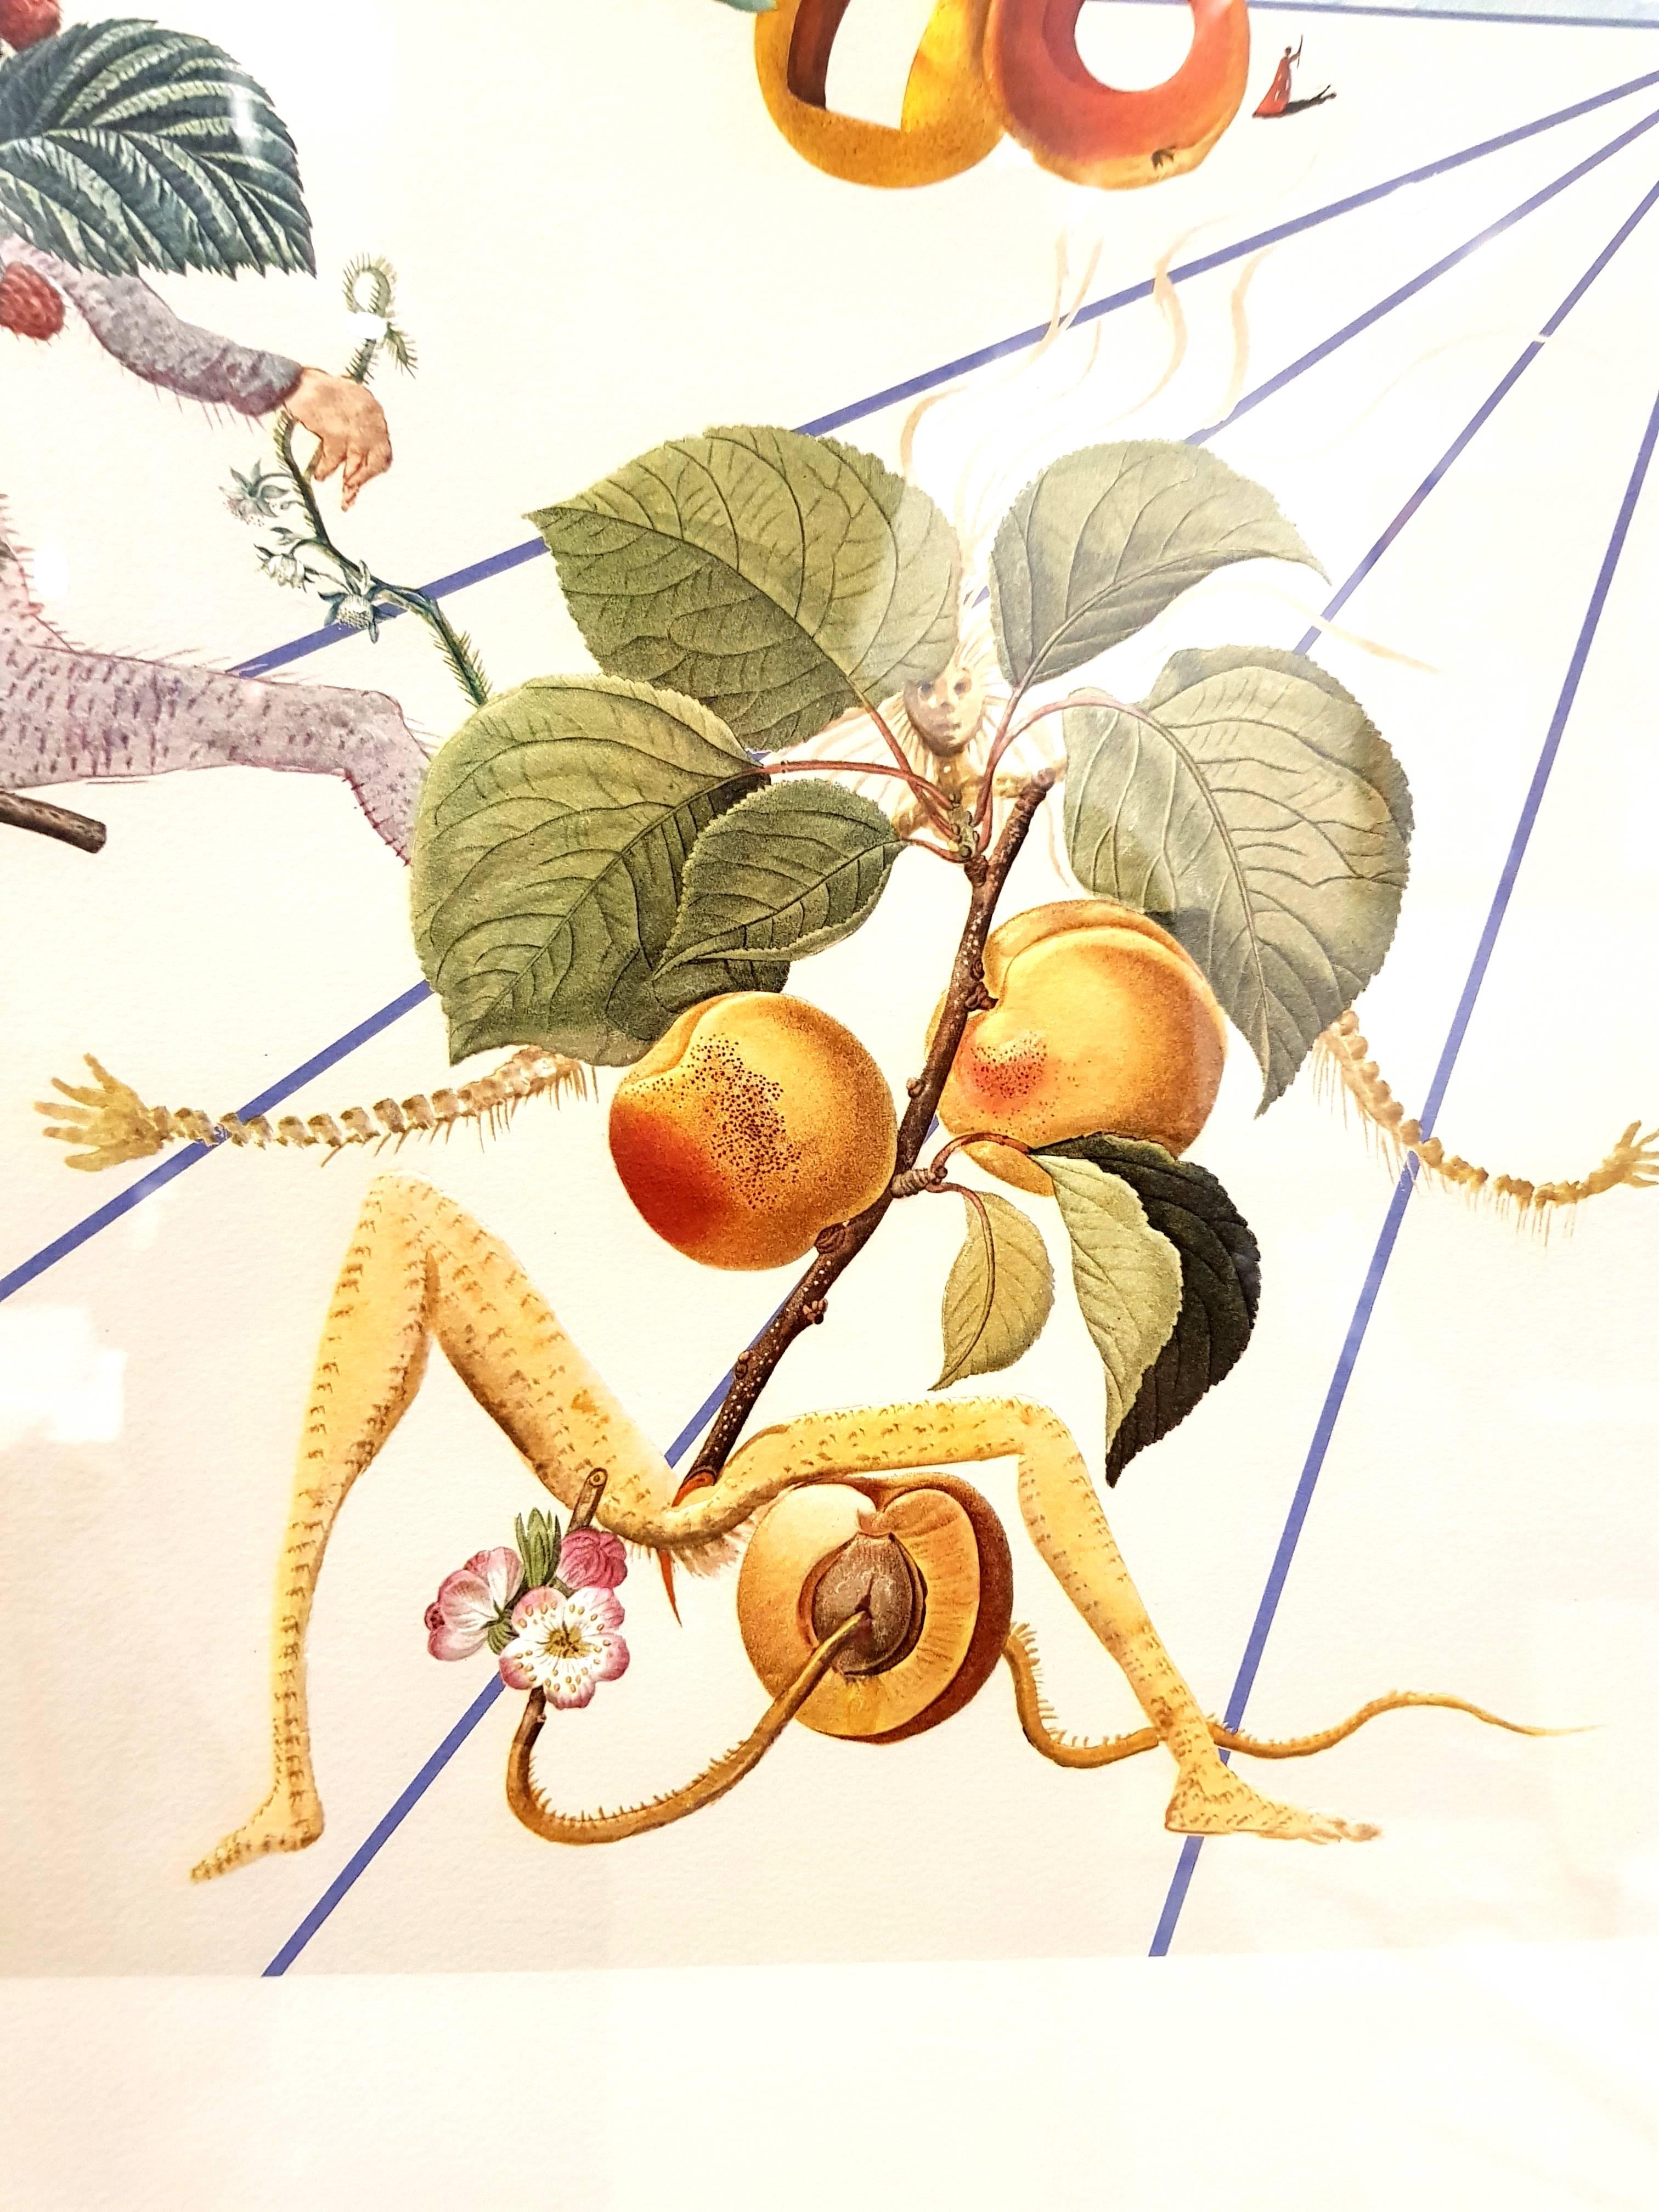 Salvador Dali - Lithographie
Titre : Flordali II
Dimensions : 75,8 x 106 cm : 75,8 x 106 cm
Référence : Michler et Löpsinger n° 1587, Champ p. 233.
Extrait de l'édition numérotée de 5000 exemplaires
Avec signature imprimée, telle que